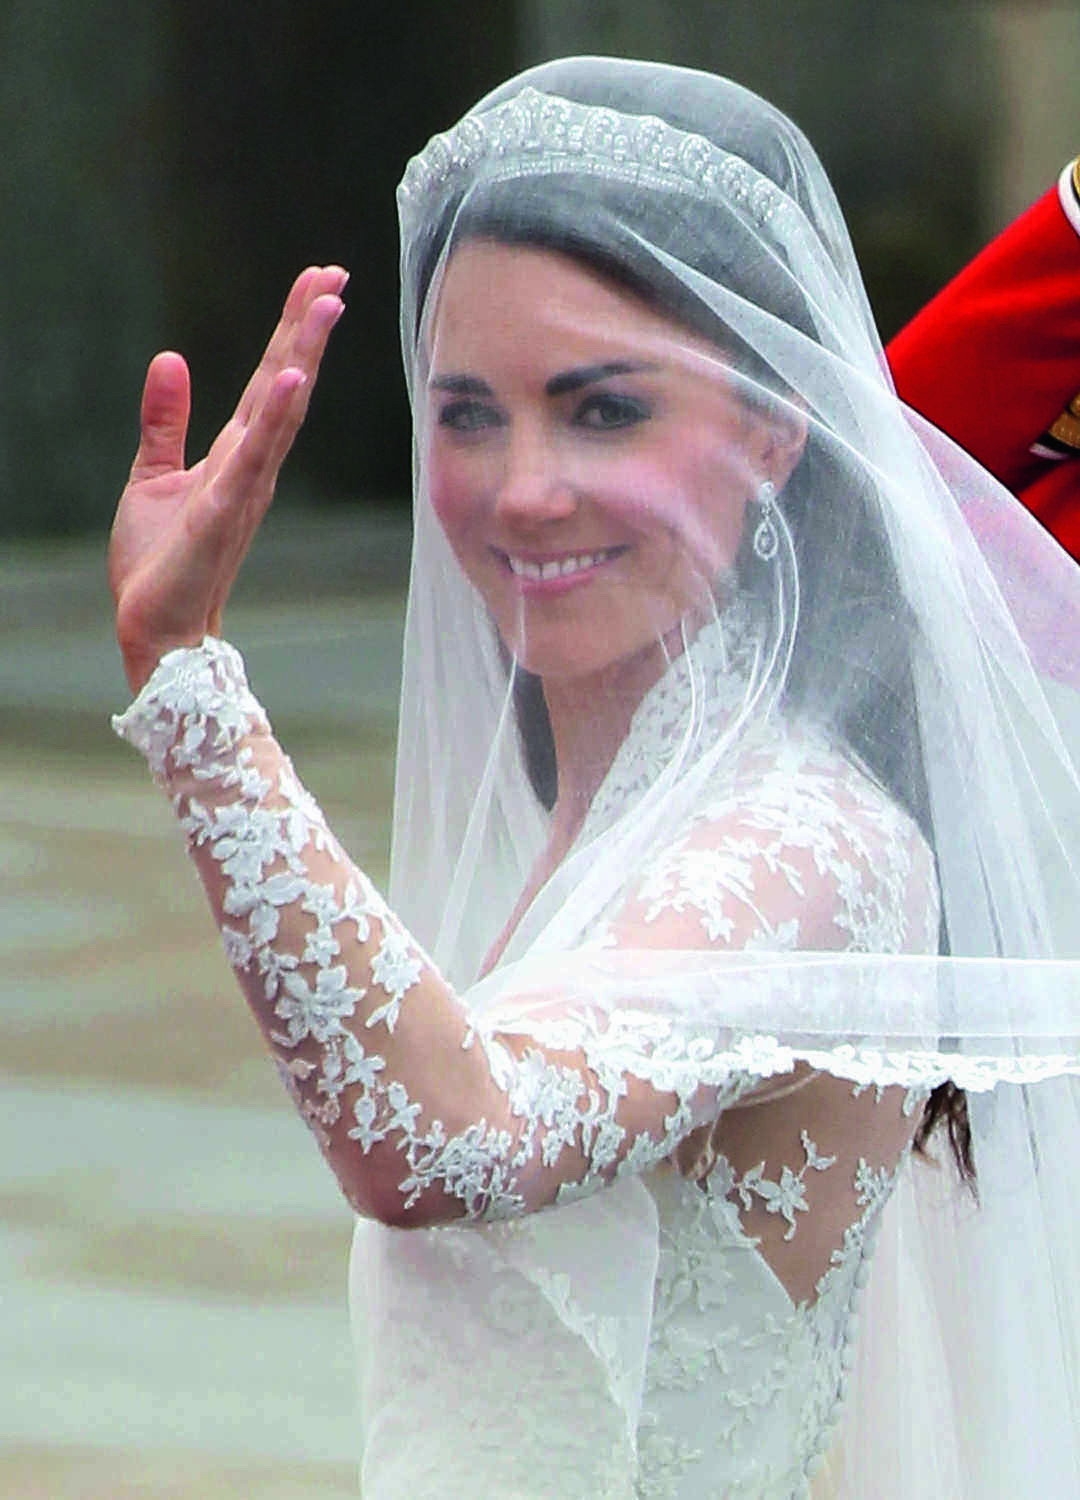 鑽戒 王妃Kate Middleton 當年結婚以小巧吊墜耳環平衡后冠的奢華感覺。